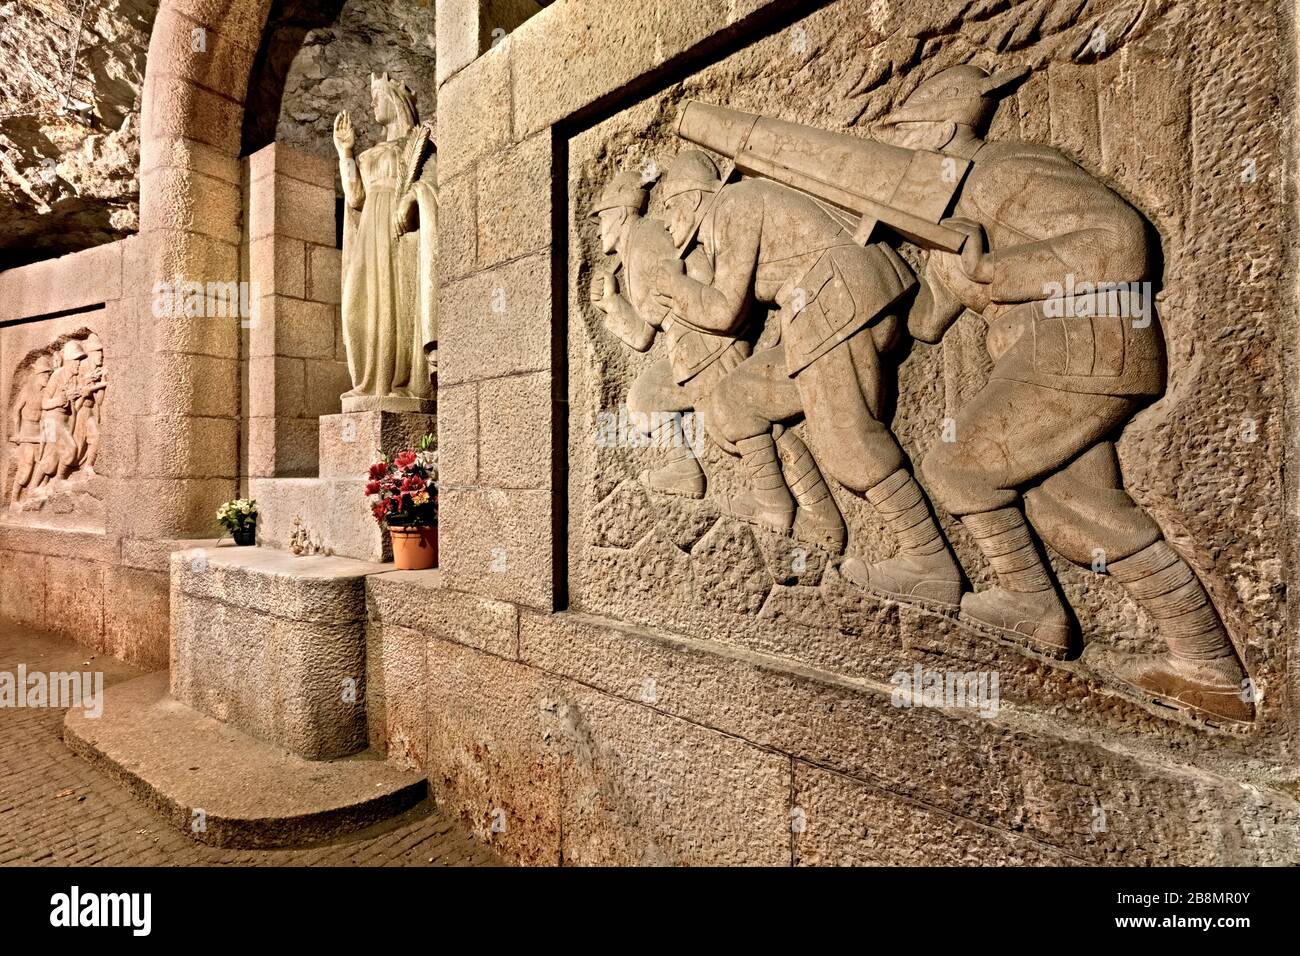 Doss Trient: Die unterirdische Kapelle Santa Barbara, Patronin der Bergleute, mit den Skulpturen der Alpini-Militäreinheiten. Trient, Italien. Stockfoto